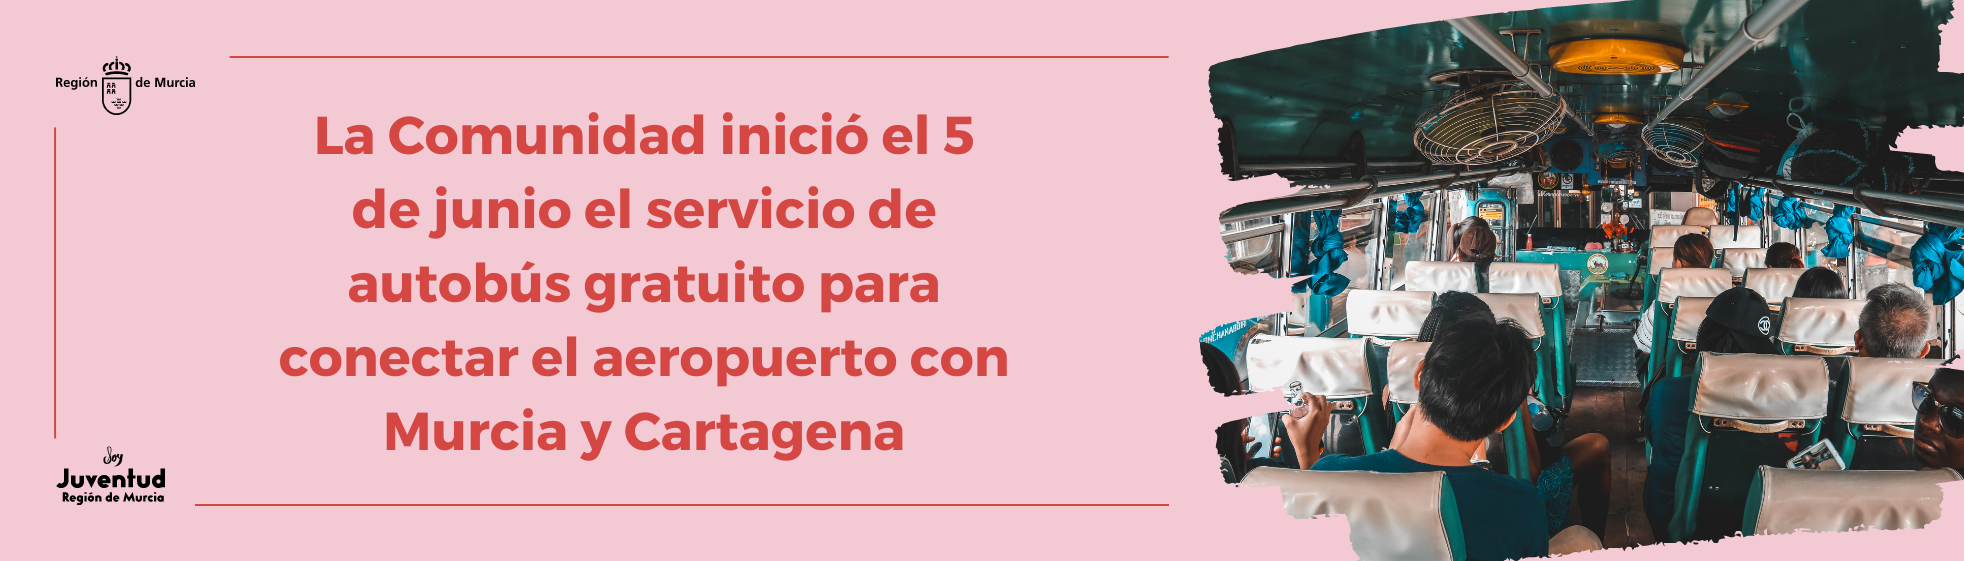 La Comunidad iniciará el 5 de junio el servicio de autobús gratuito para conectar el aeropuerto con Murcia y Cartagena